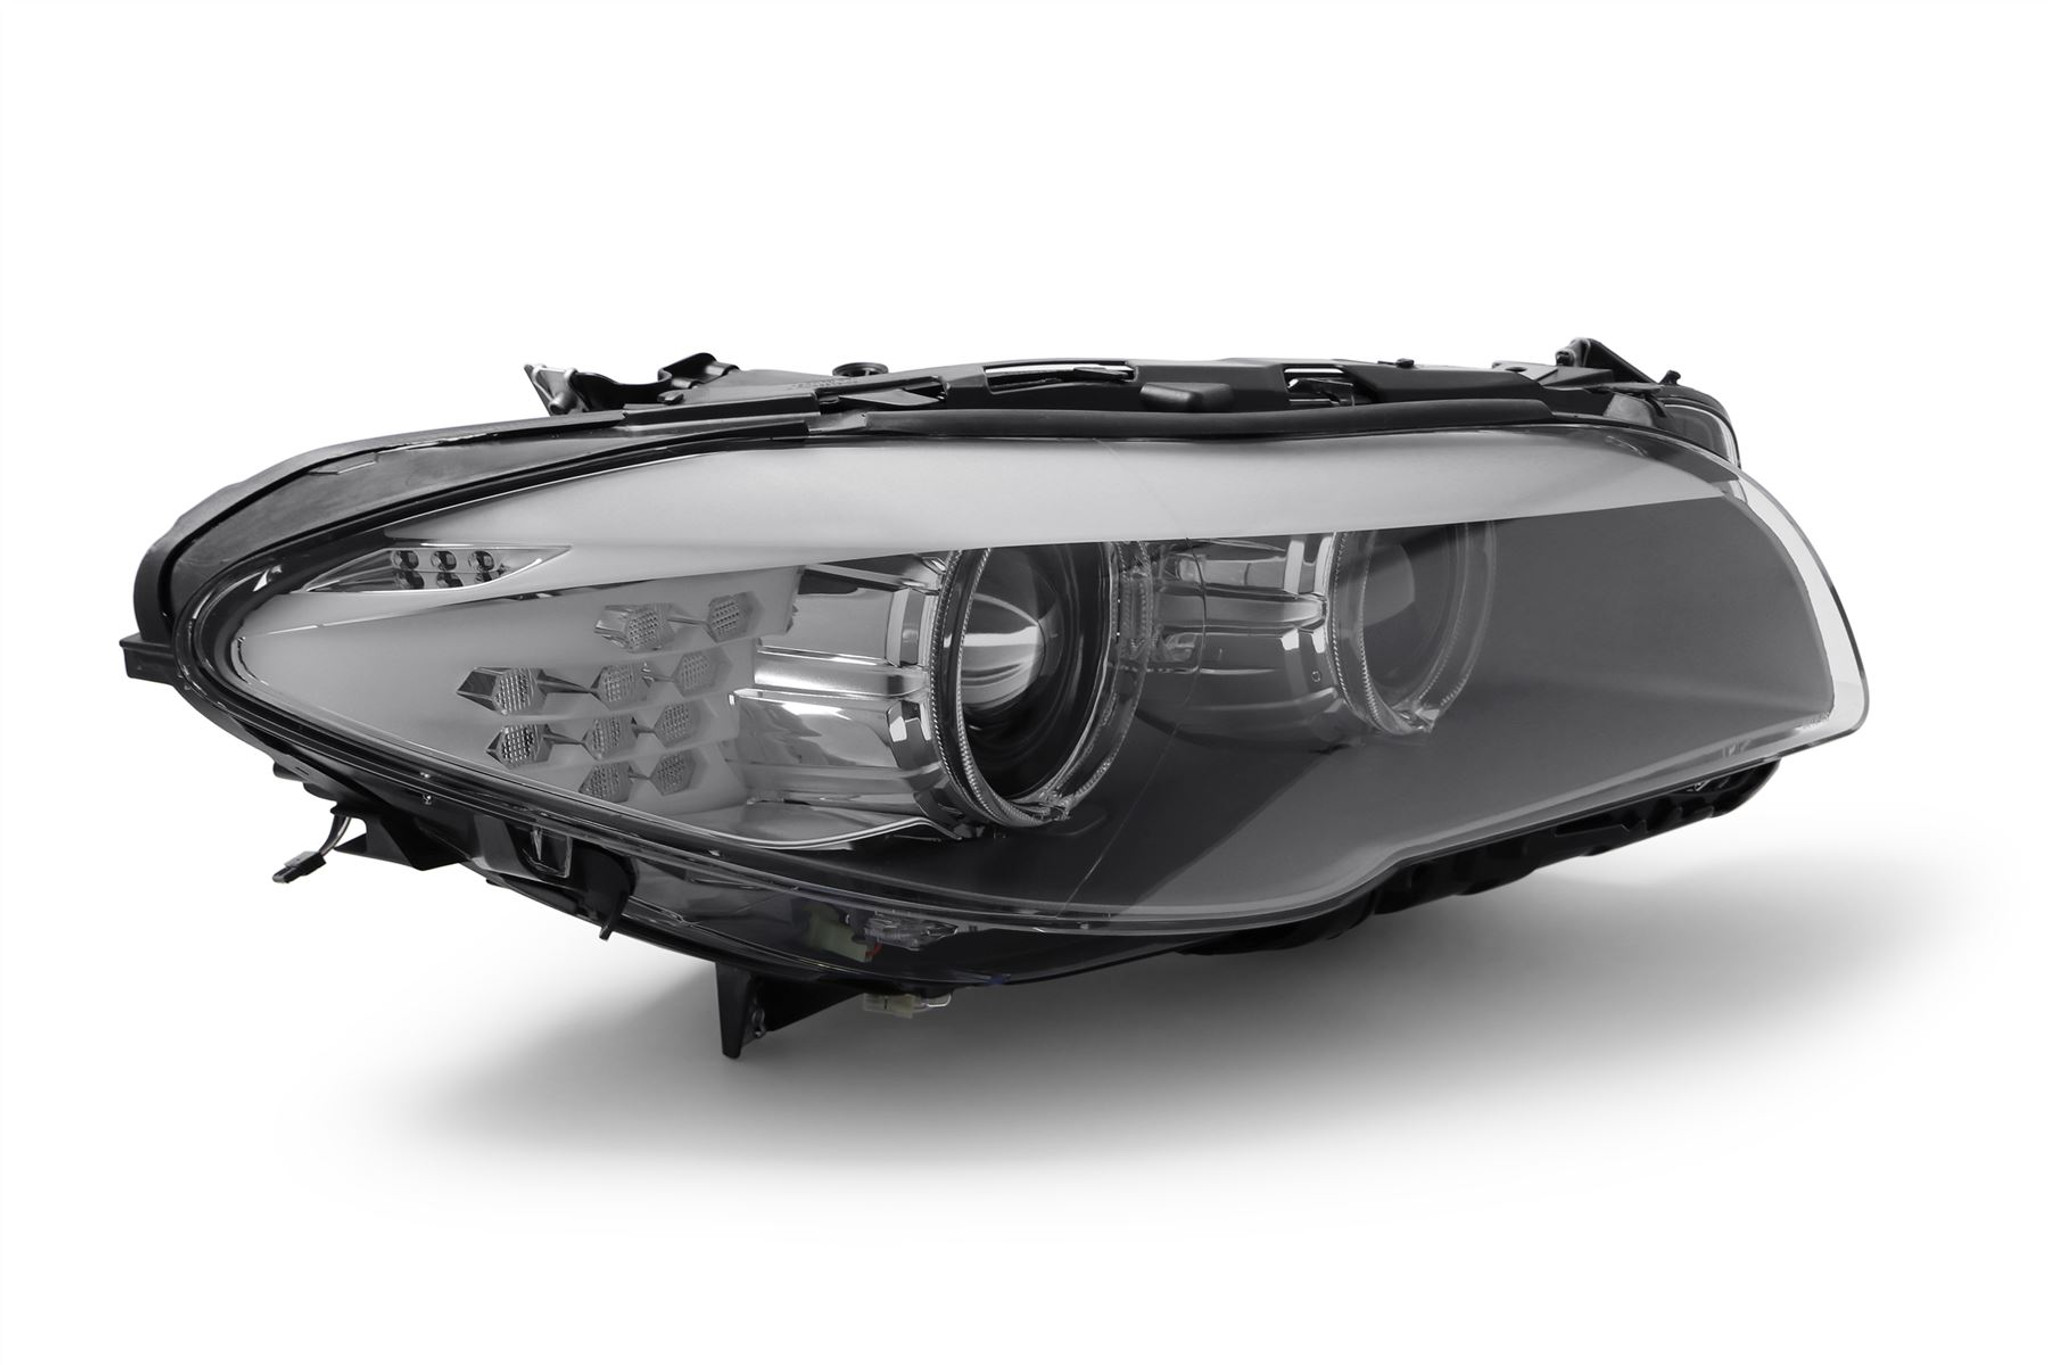 Vemo Xenon Headlight Driver Control Module - BMW F10 5-Series